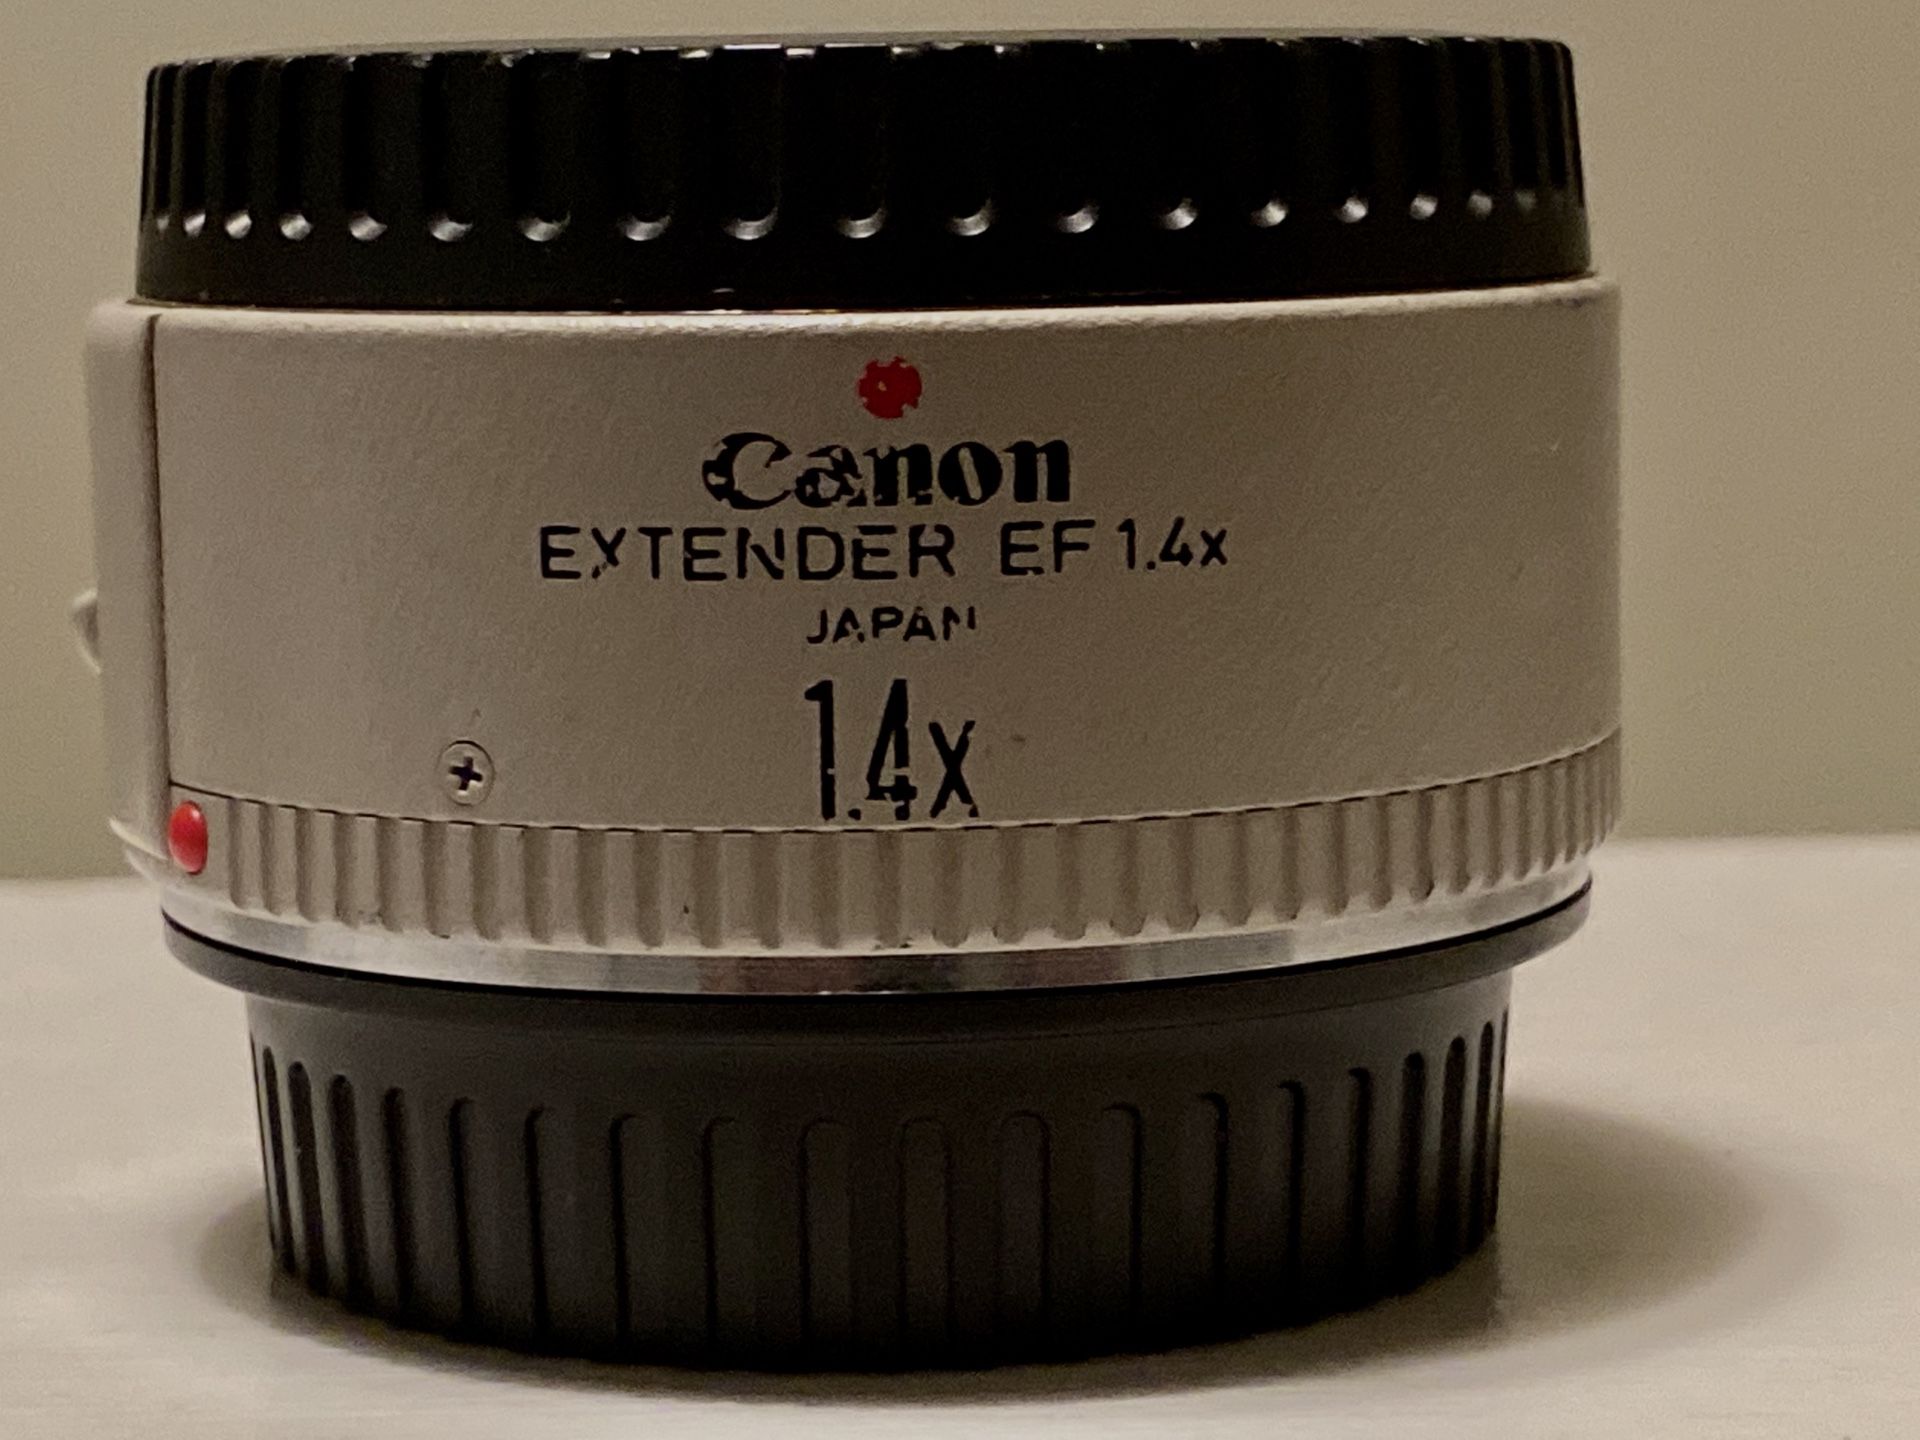 Canon 1.4x teleconverter for L series USM & IS lenses